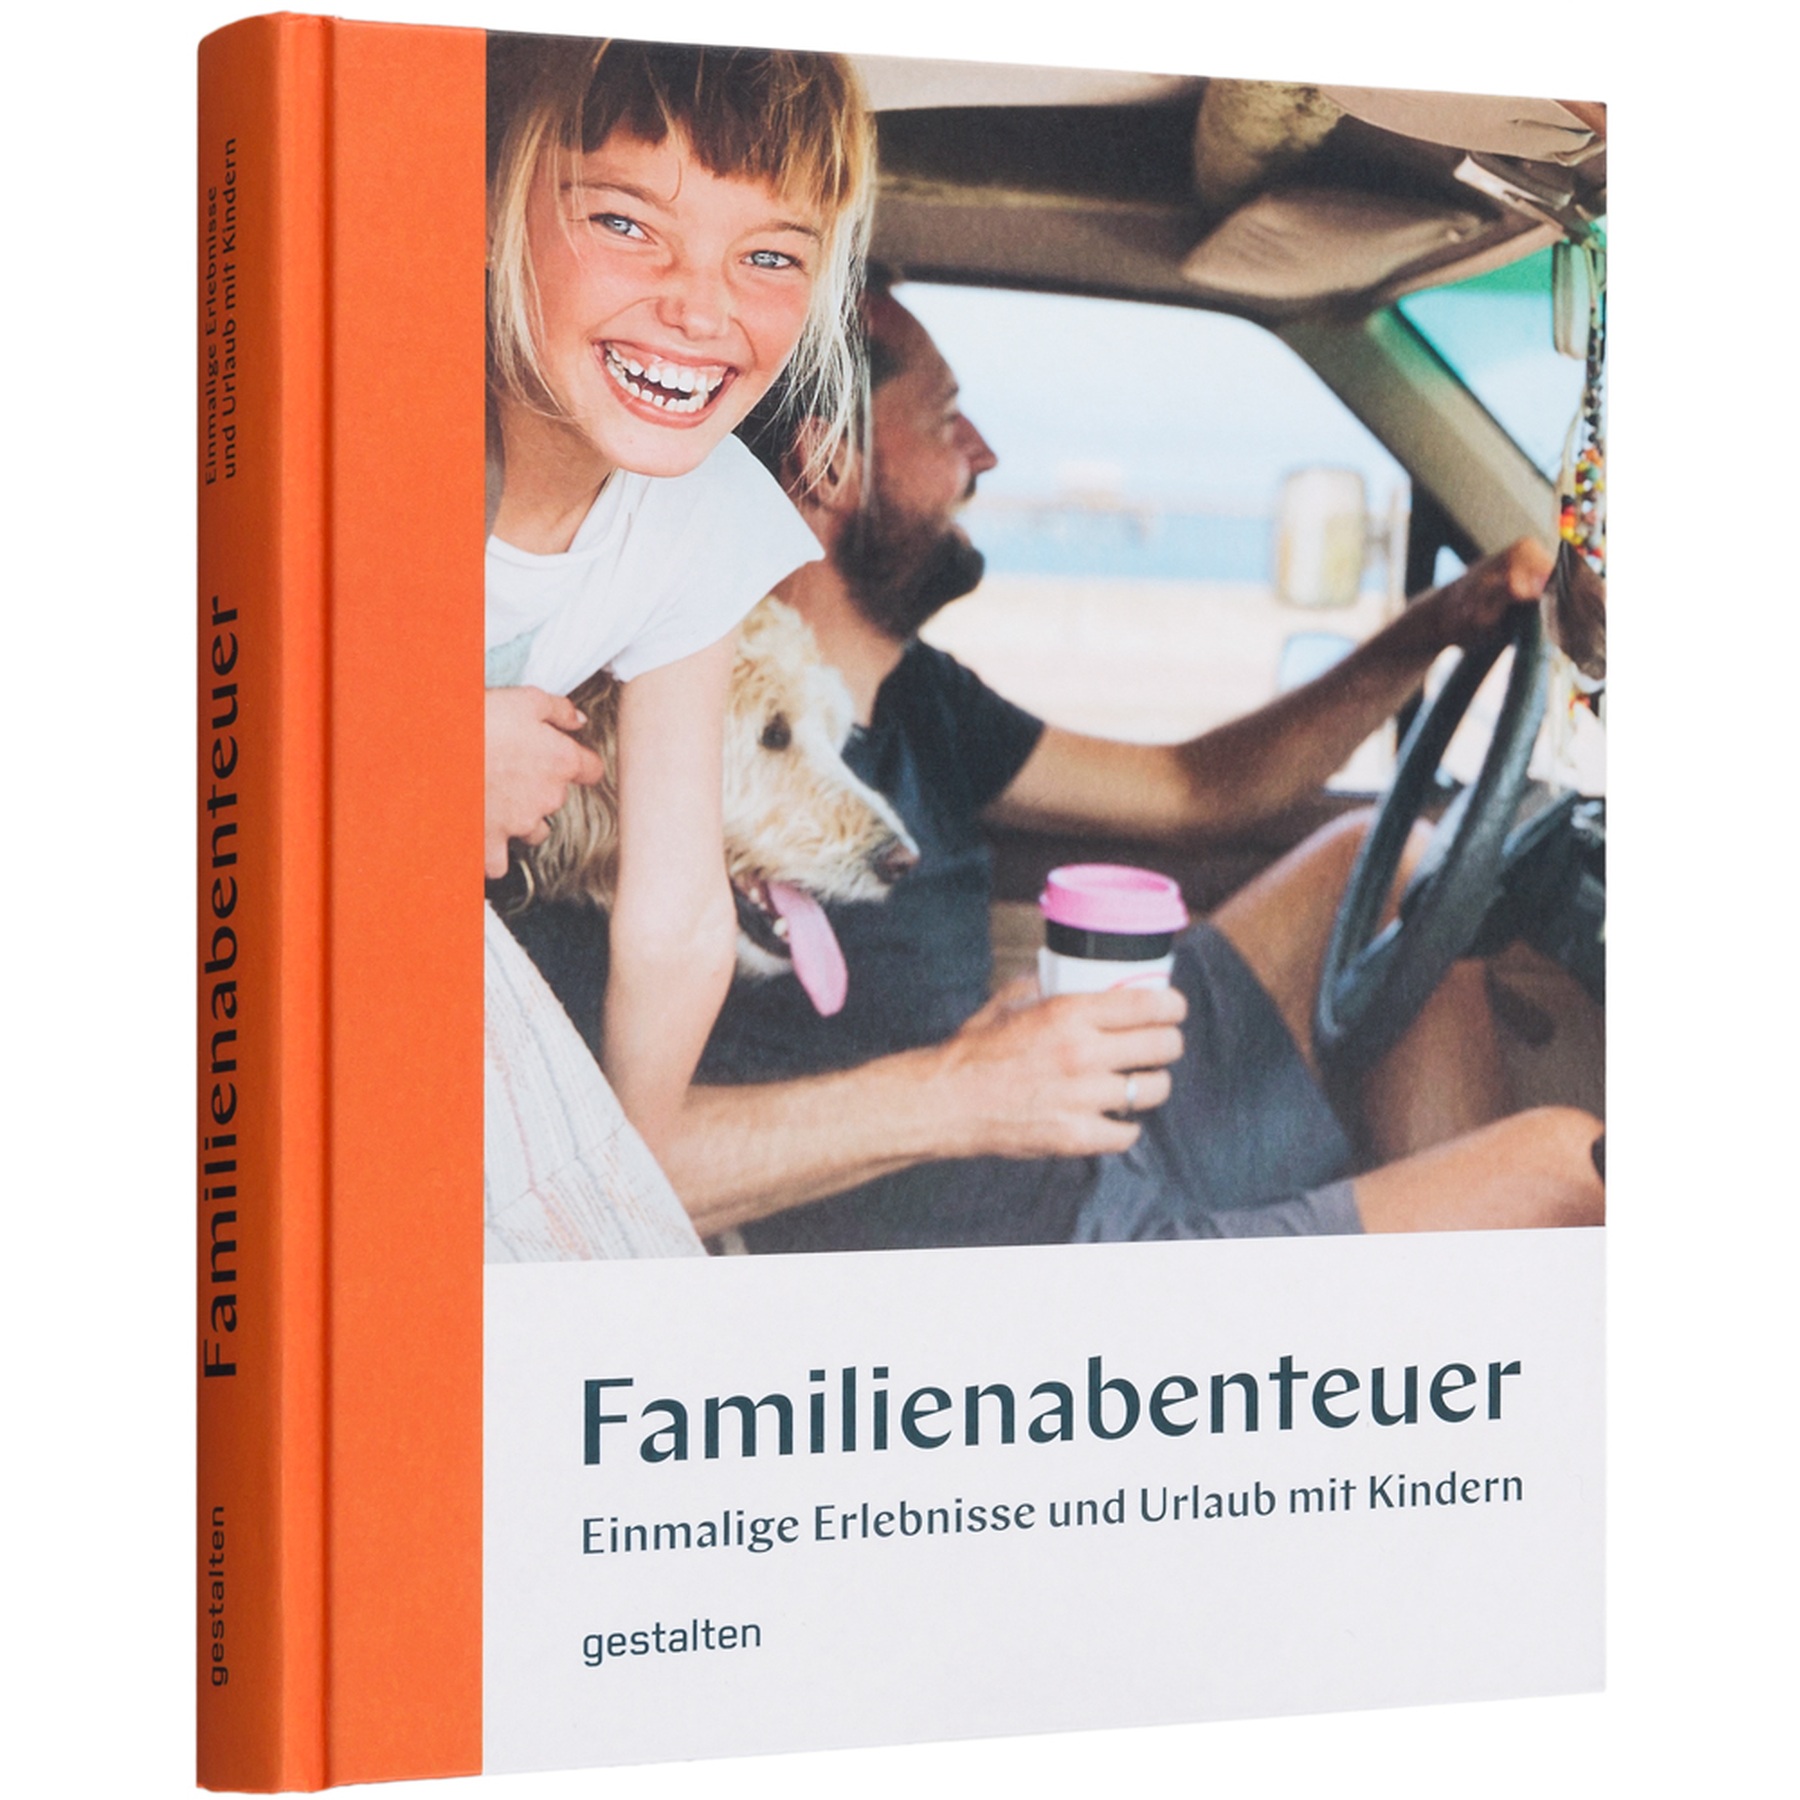 Produktbild von gestalten Familienabenteuer - Einmalige Erlebnisse und Urlaub mit Kindern